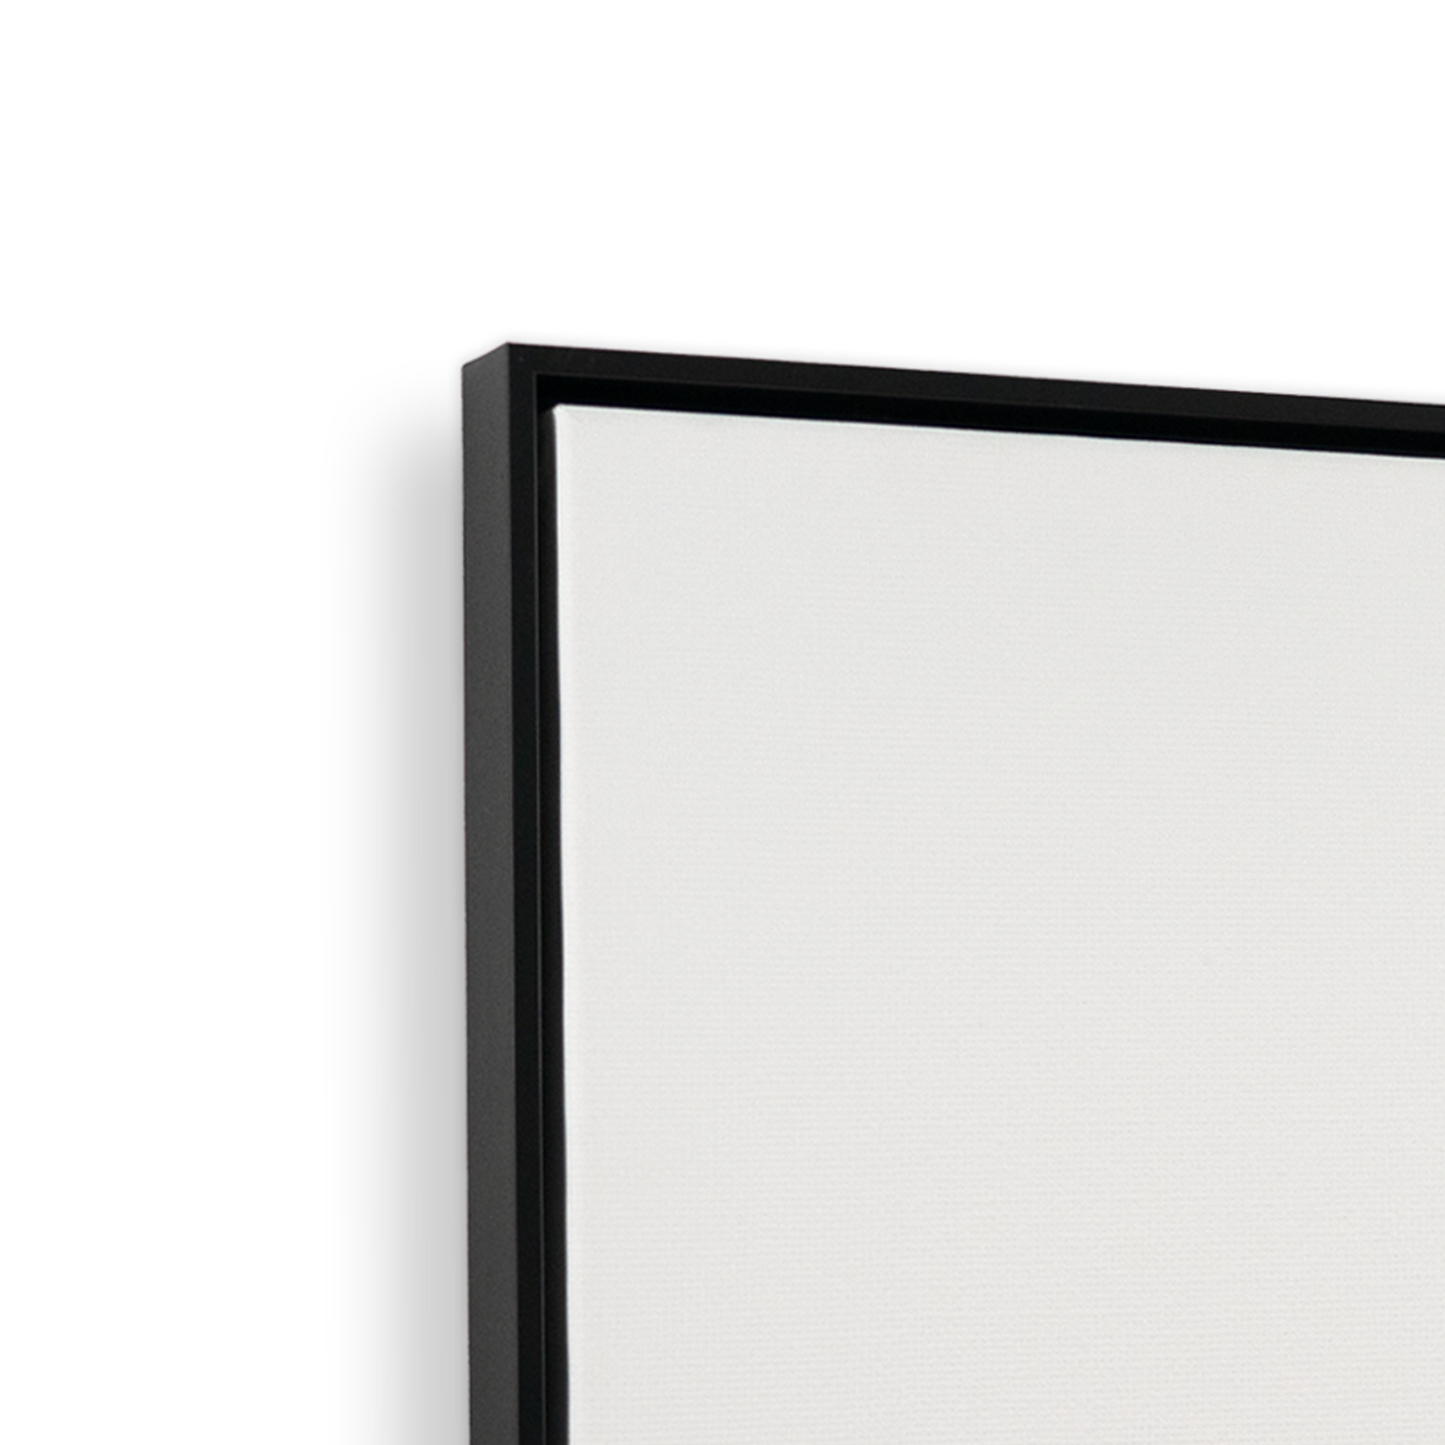 [color:Satin Black],[shape:rectangle], Picture of corner of frame